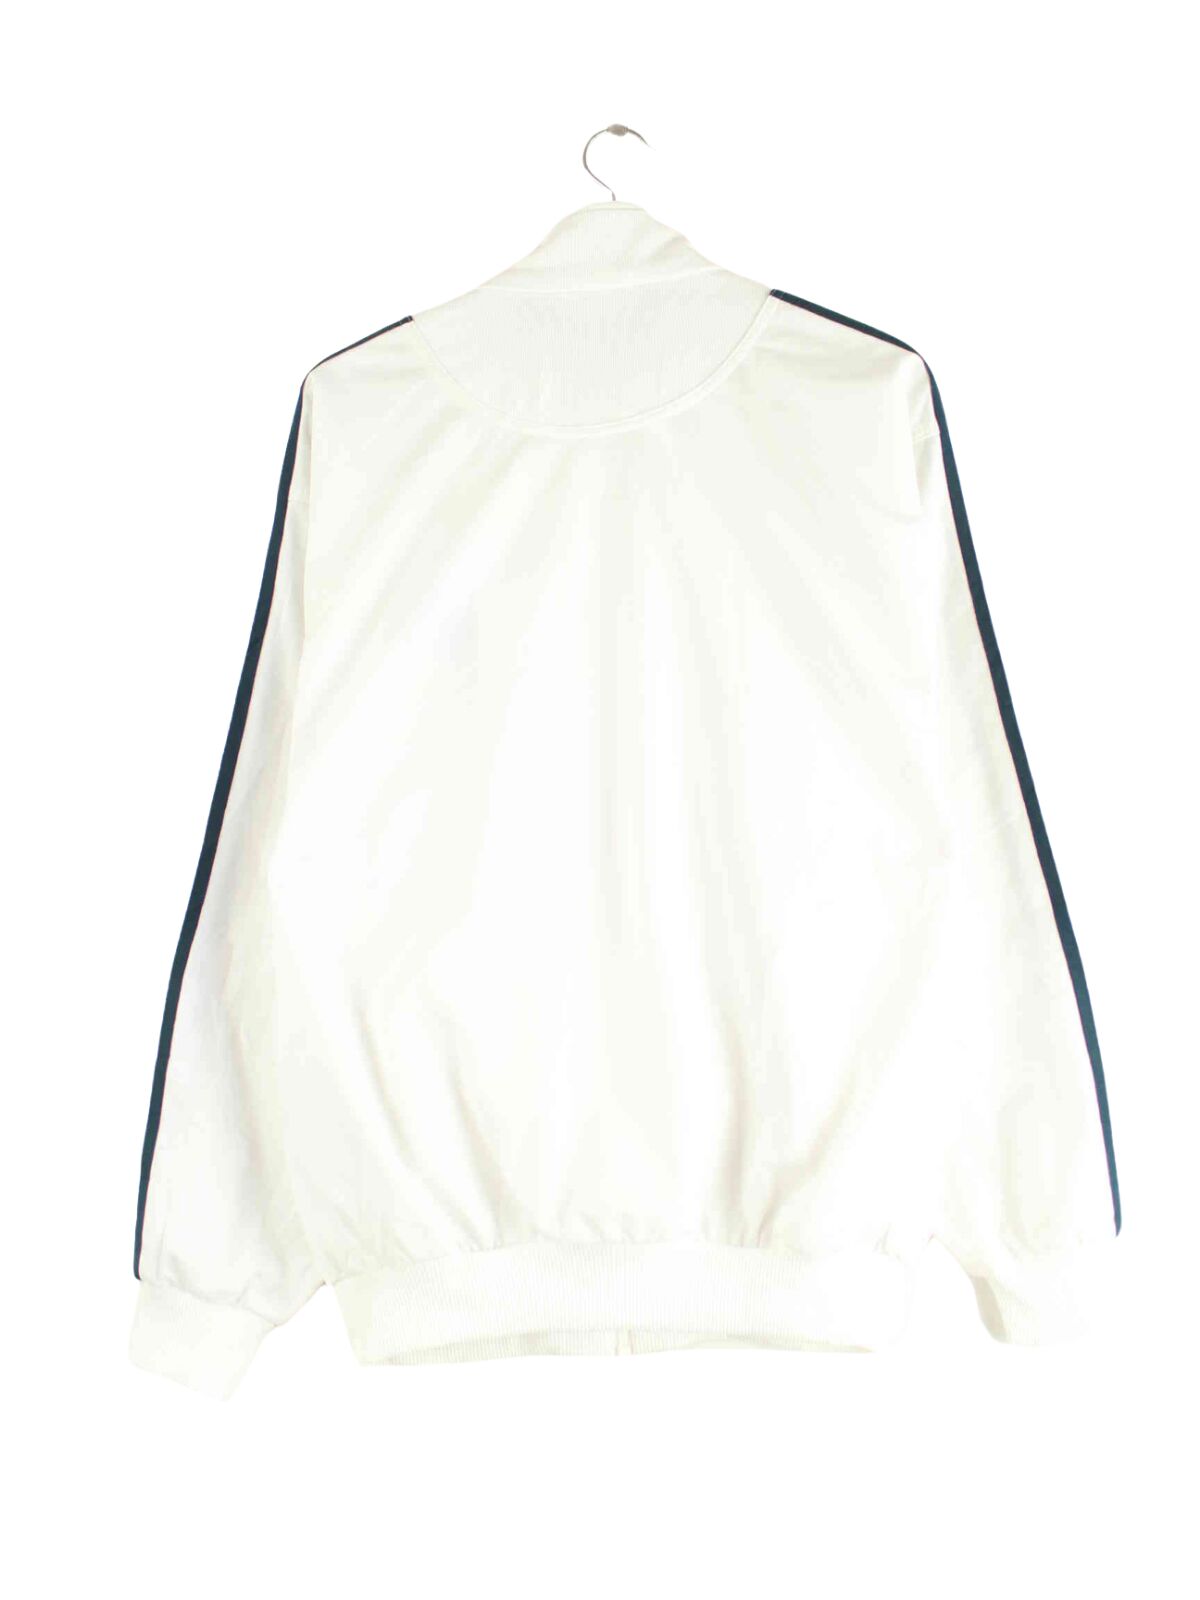 Adidas 90s Vintage Performance Trainingsjacke Weiß M (back image)